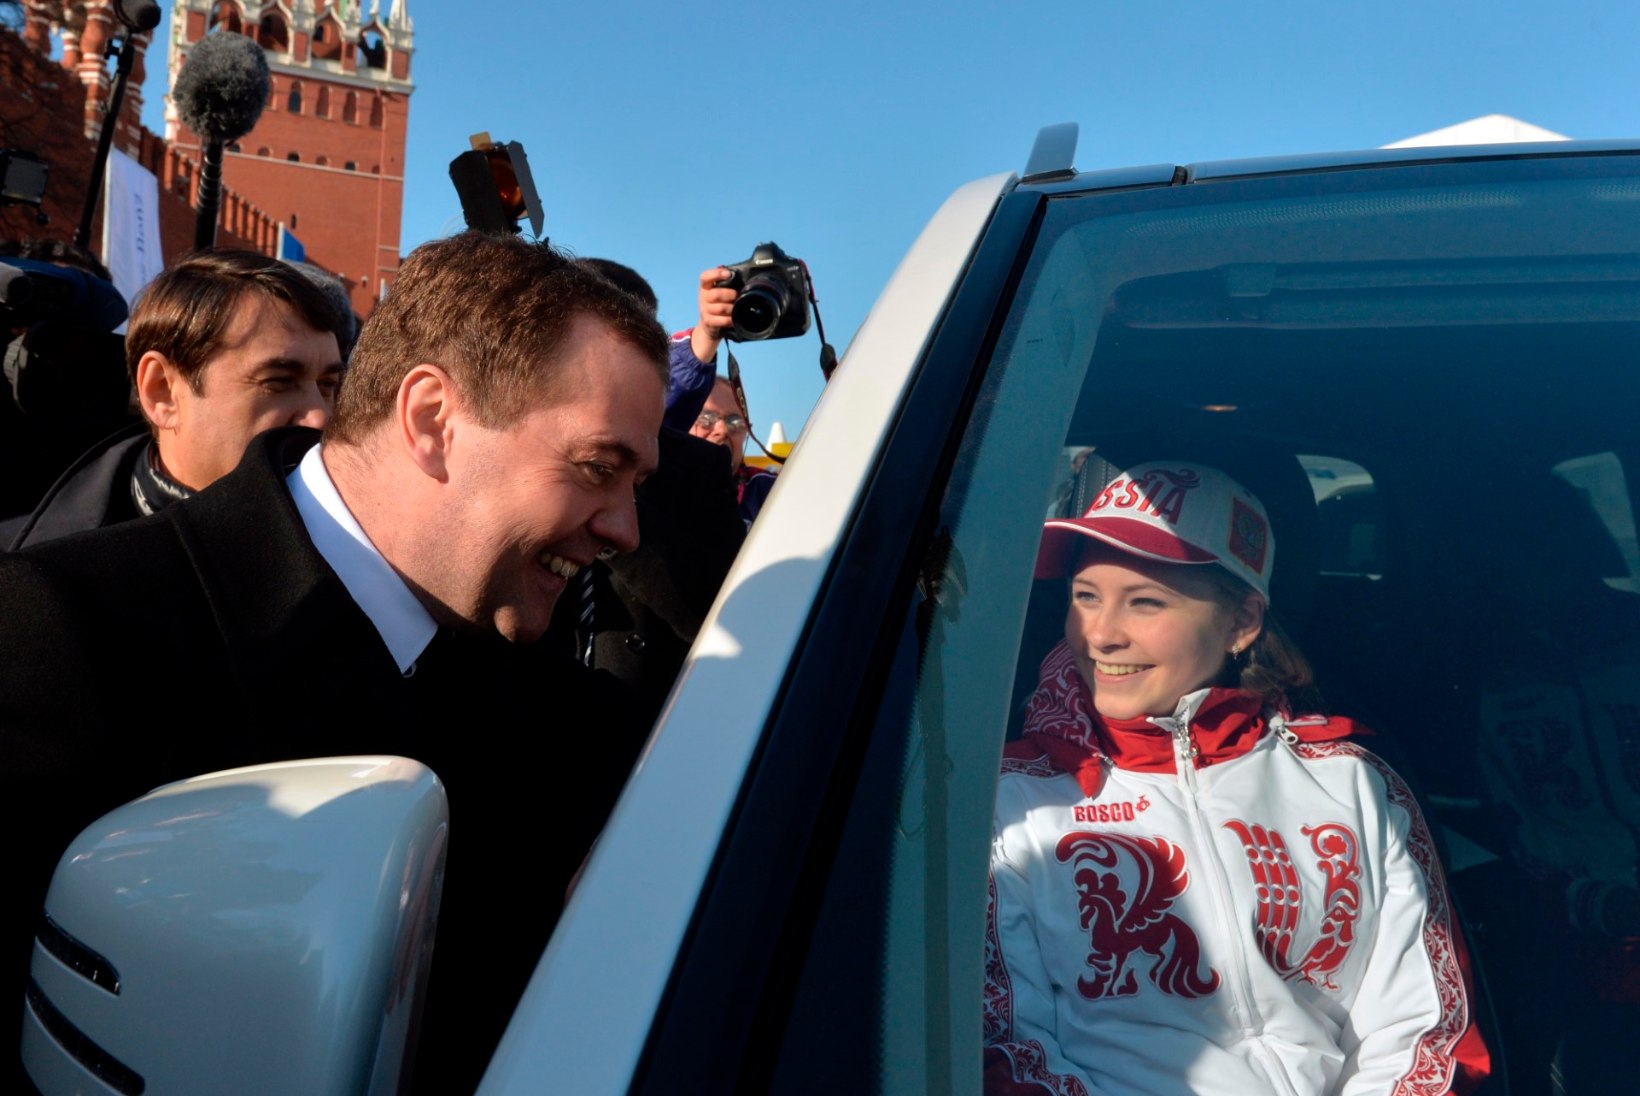 FOTOD: Vene olümpiavõitjad said Mercedesed kätte Punasel väljakul